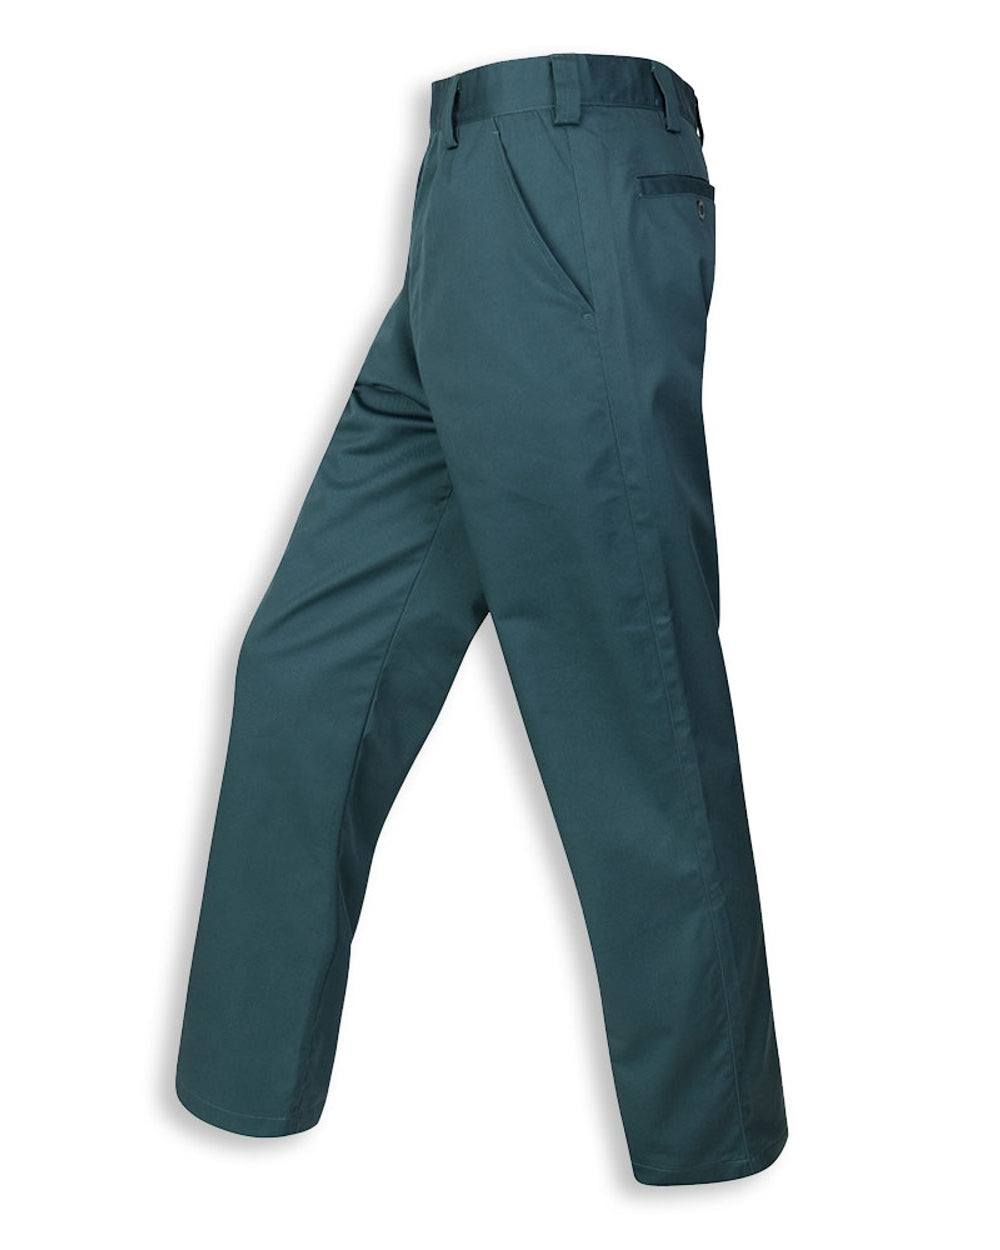 Hi-Vis Thermal Lined Waterproof Trousers | WorkWear Experts